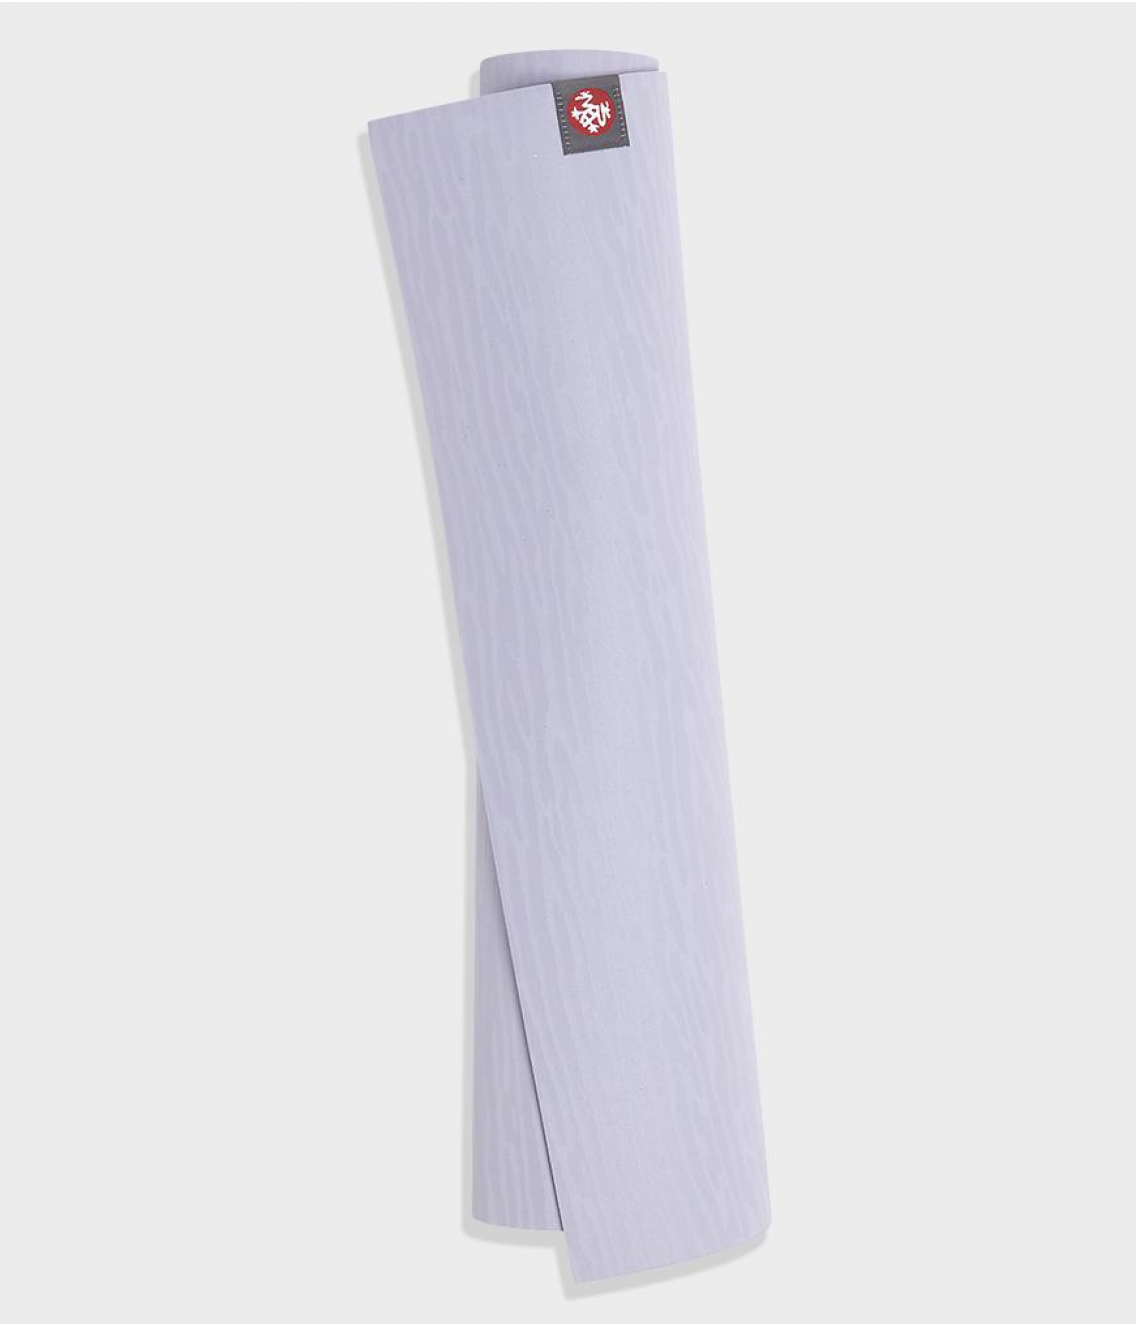 Профессиональный каучуковый коврик для йоги Manduka eKO lite 180*61*0,4 см - Lavender